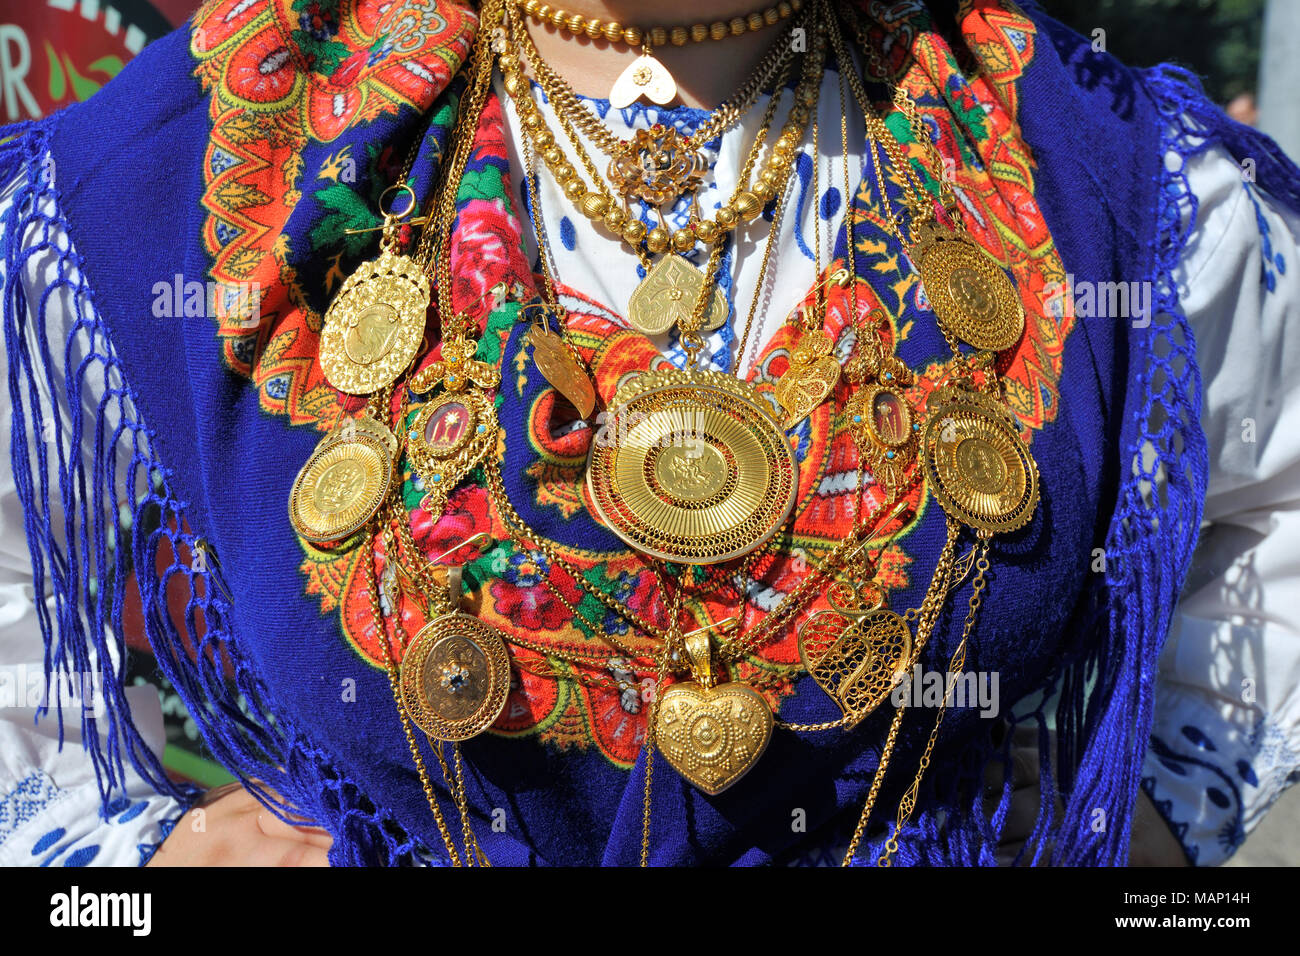 Collier en or et costume traditionnel (Lavradeira) du Minho. Notre Dame de l'agonie des festivités, la plus grande fête traditionnelle au Portugal. Viana do ar Banque D'Images